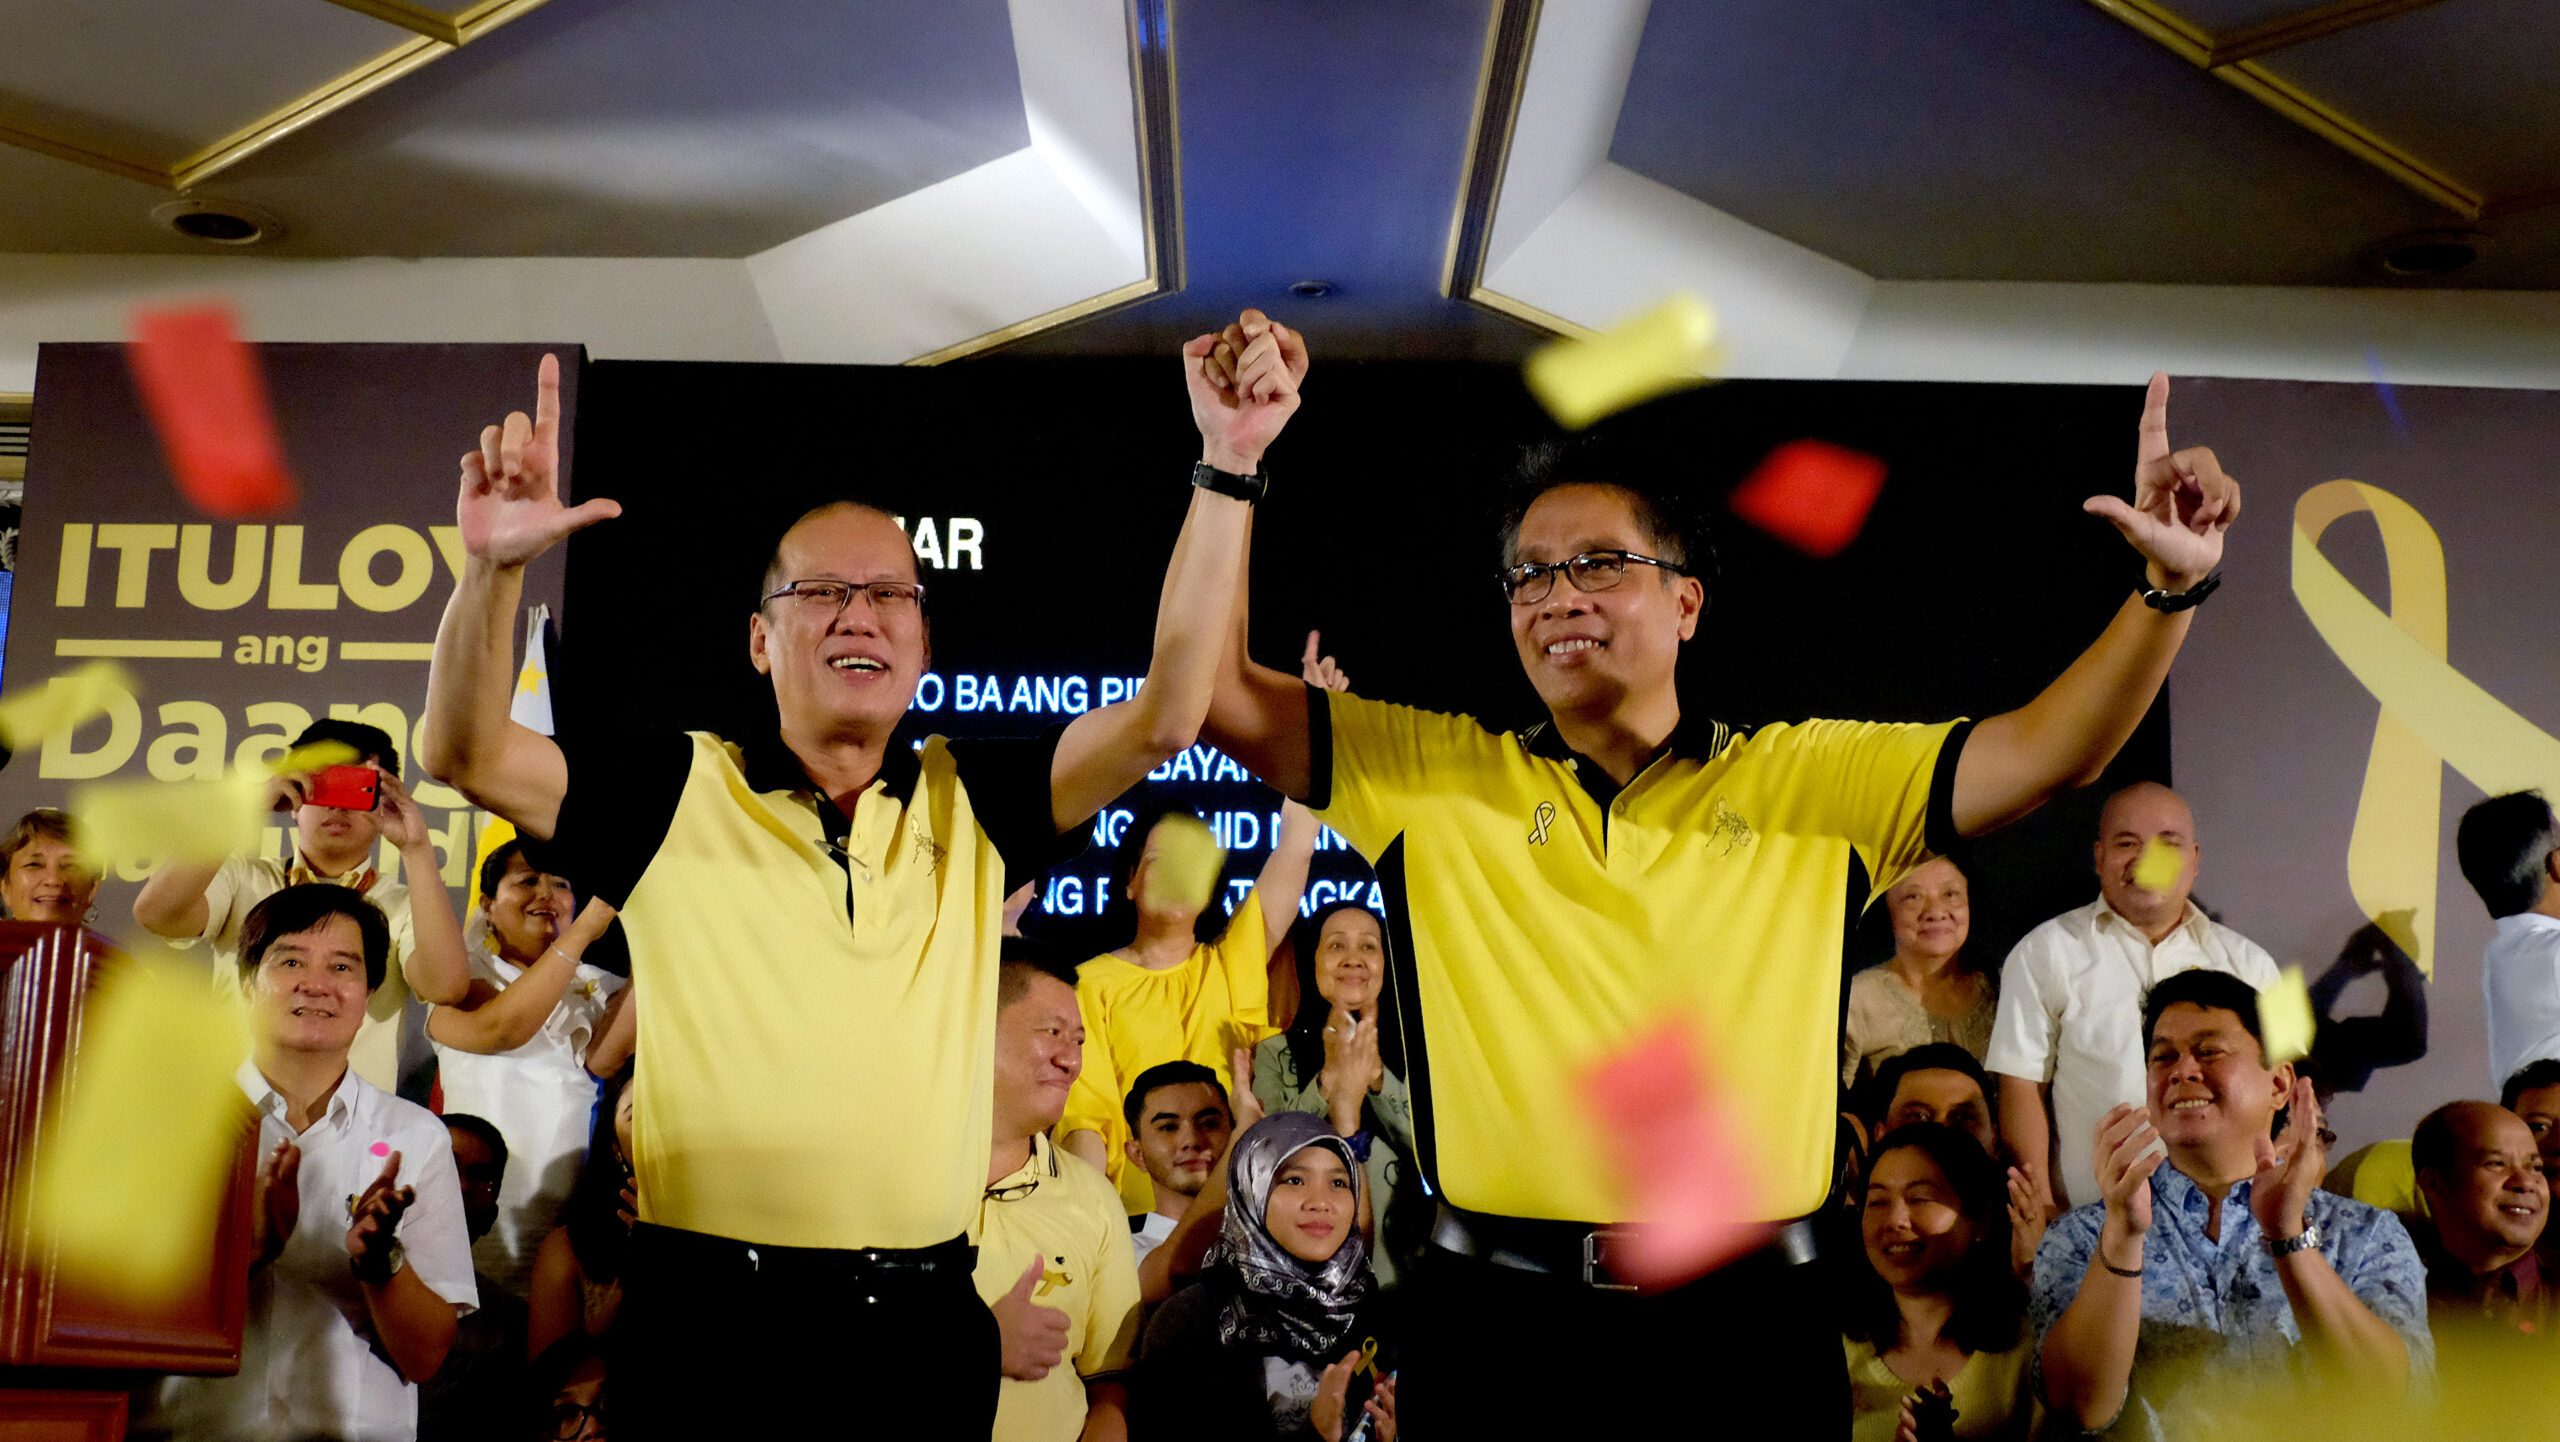 Aquino endorses Mar Roxas